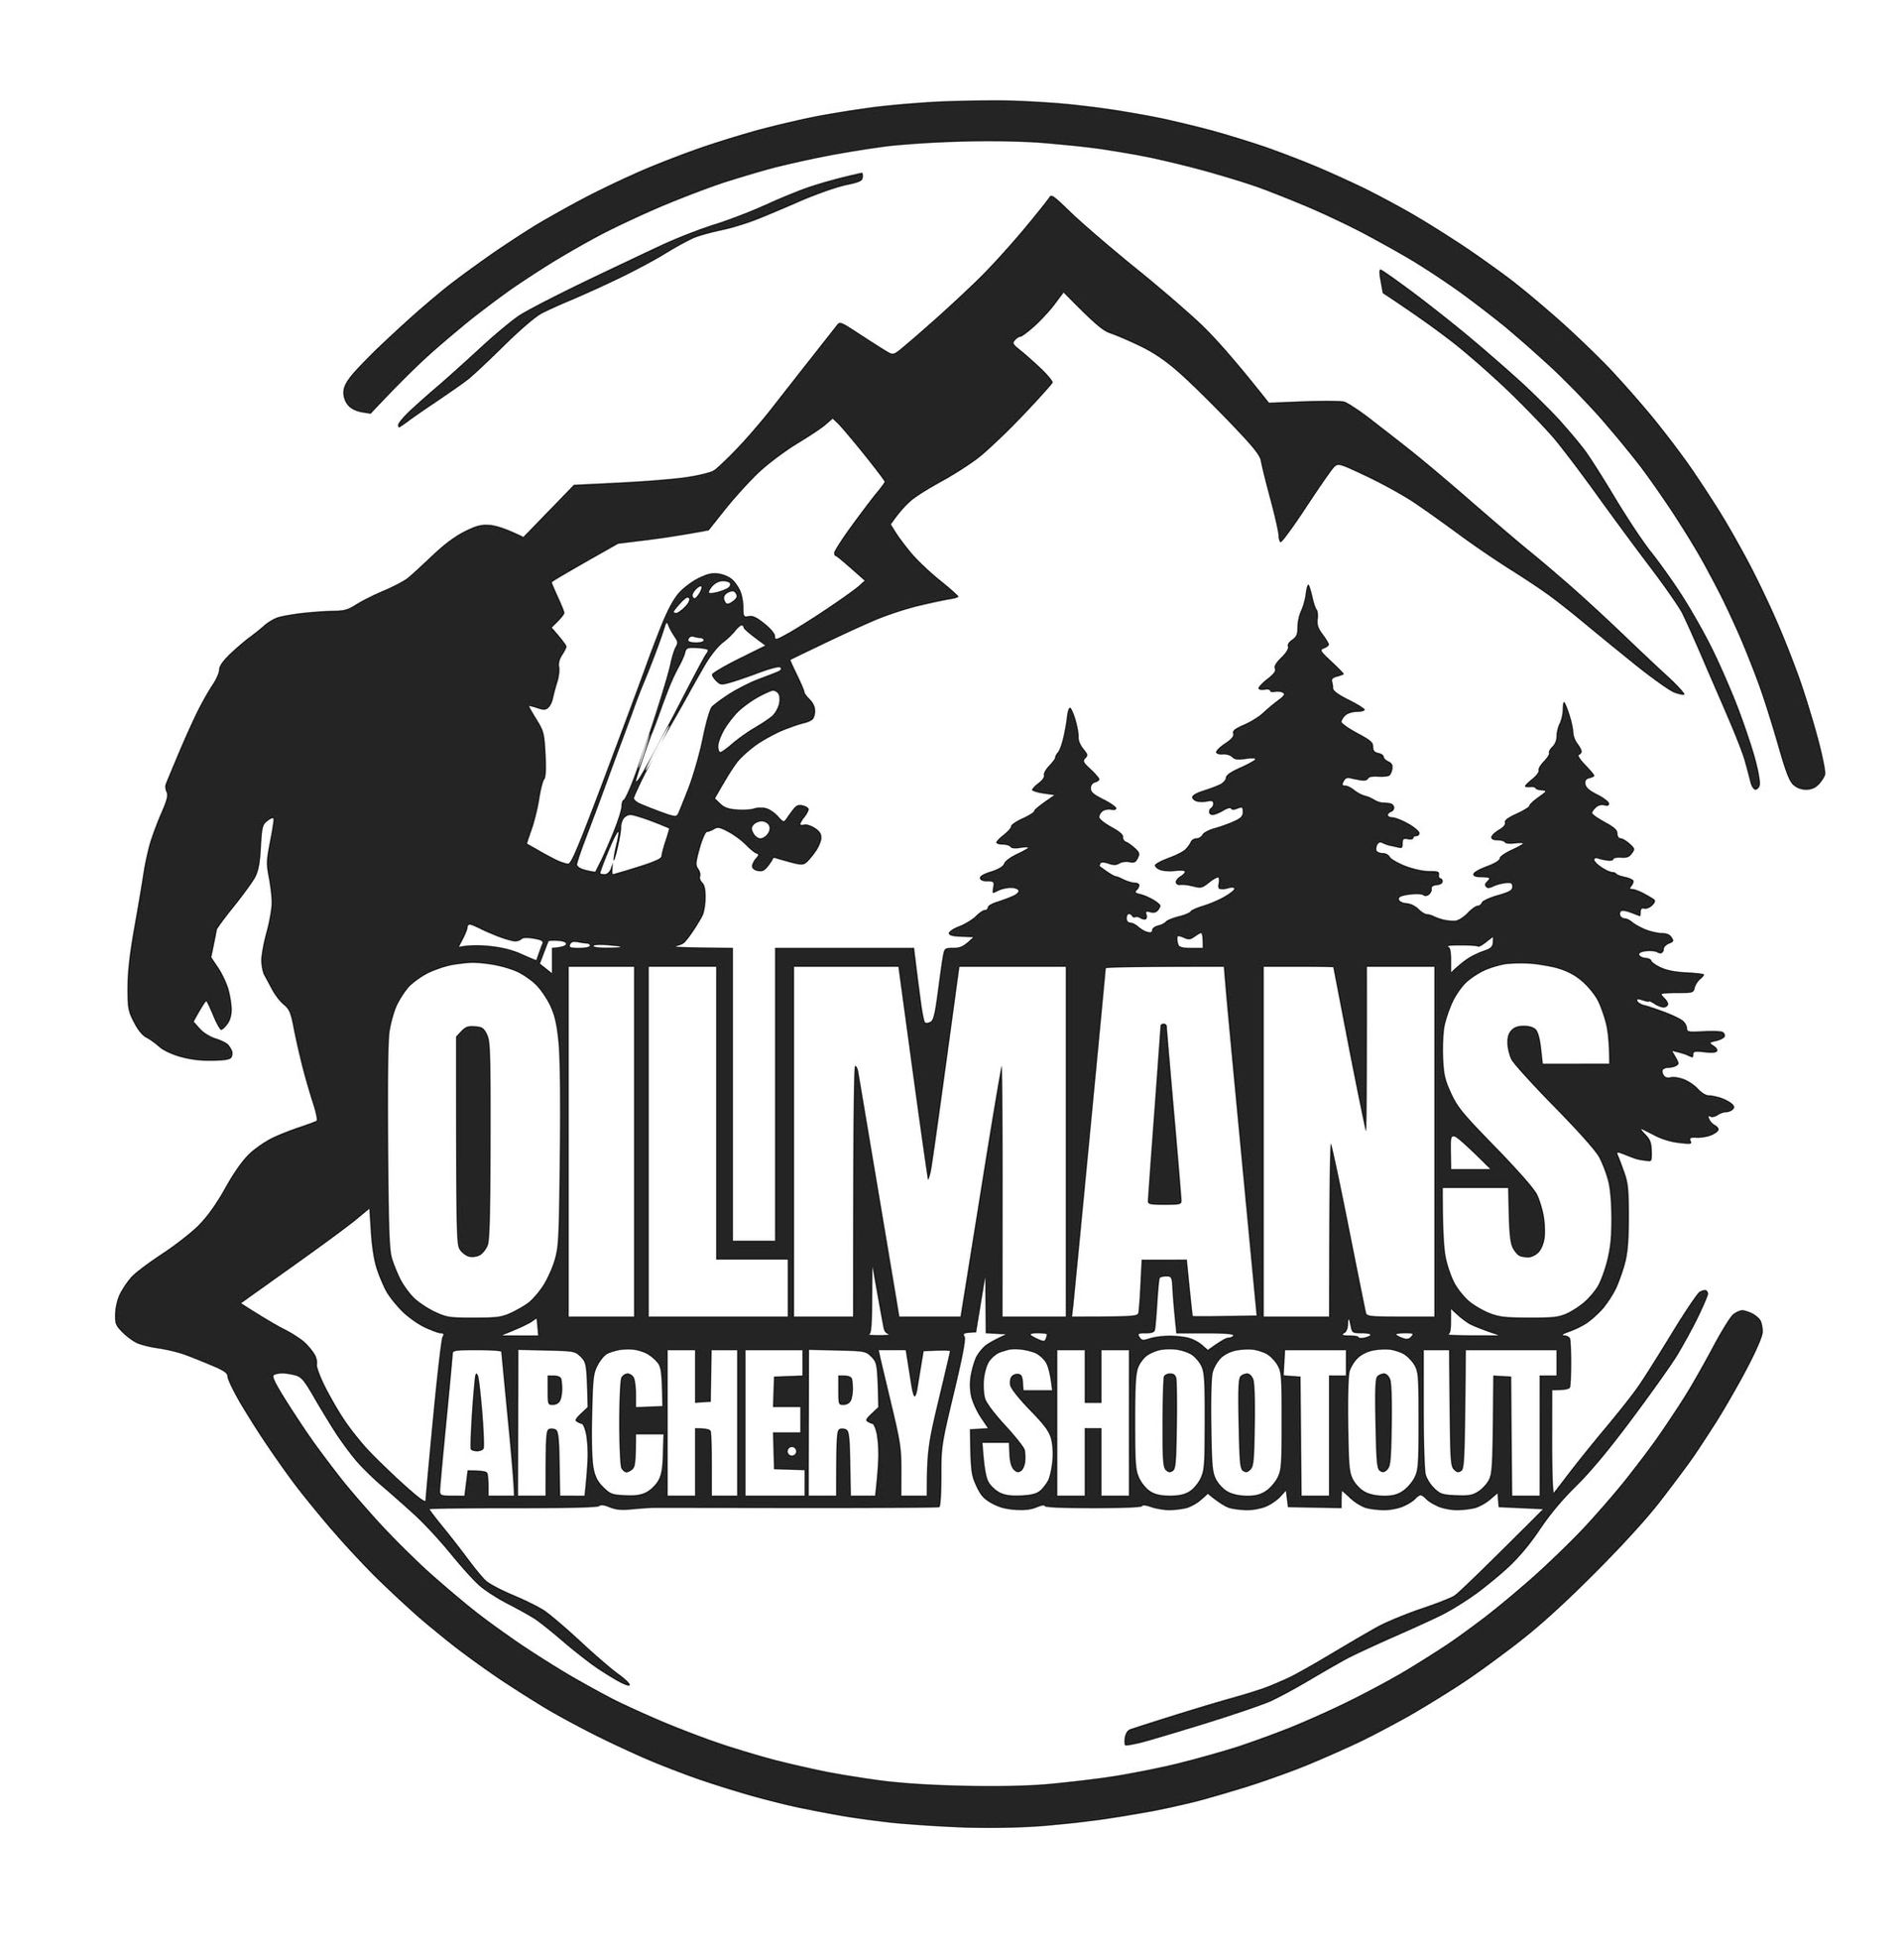 Oils Man Logo HD